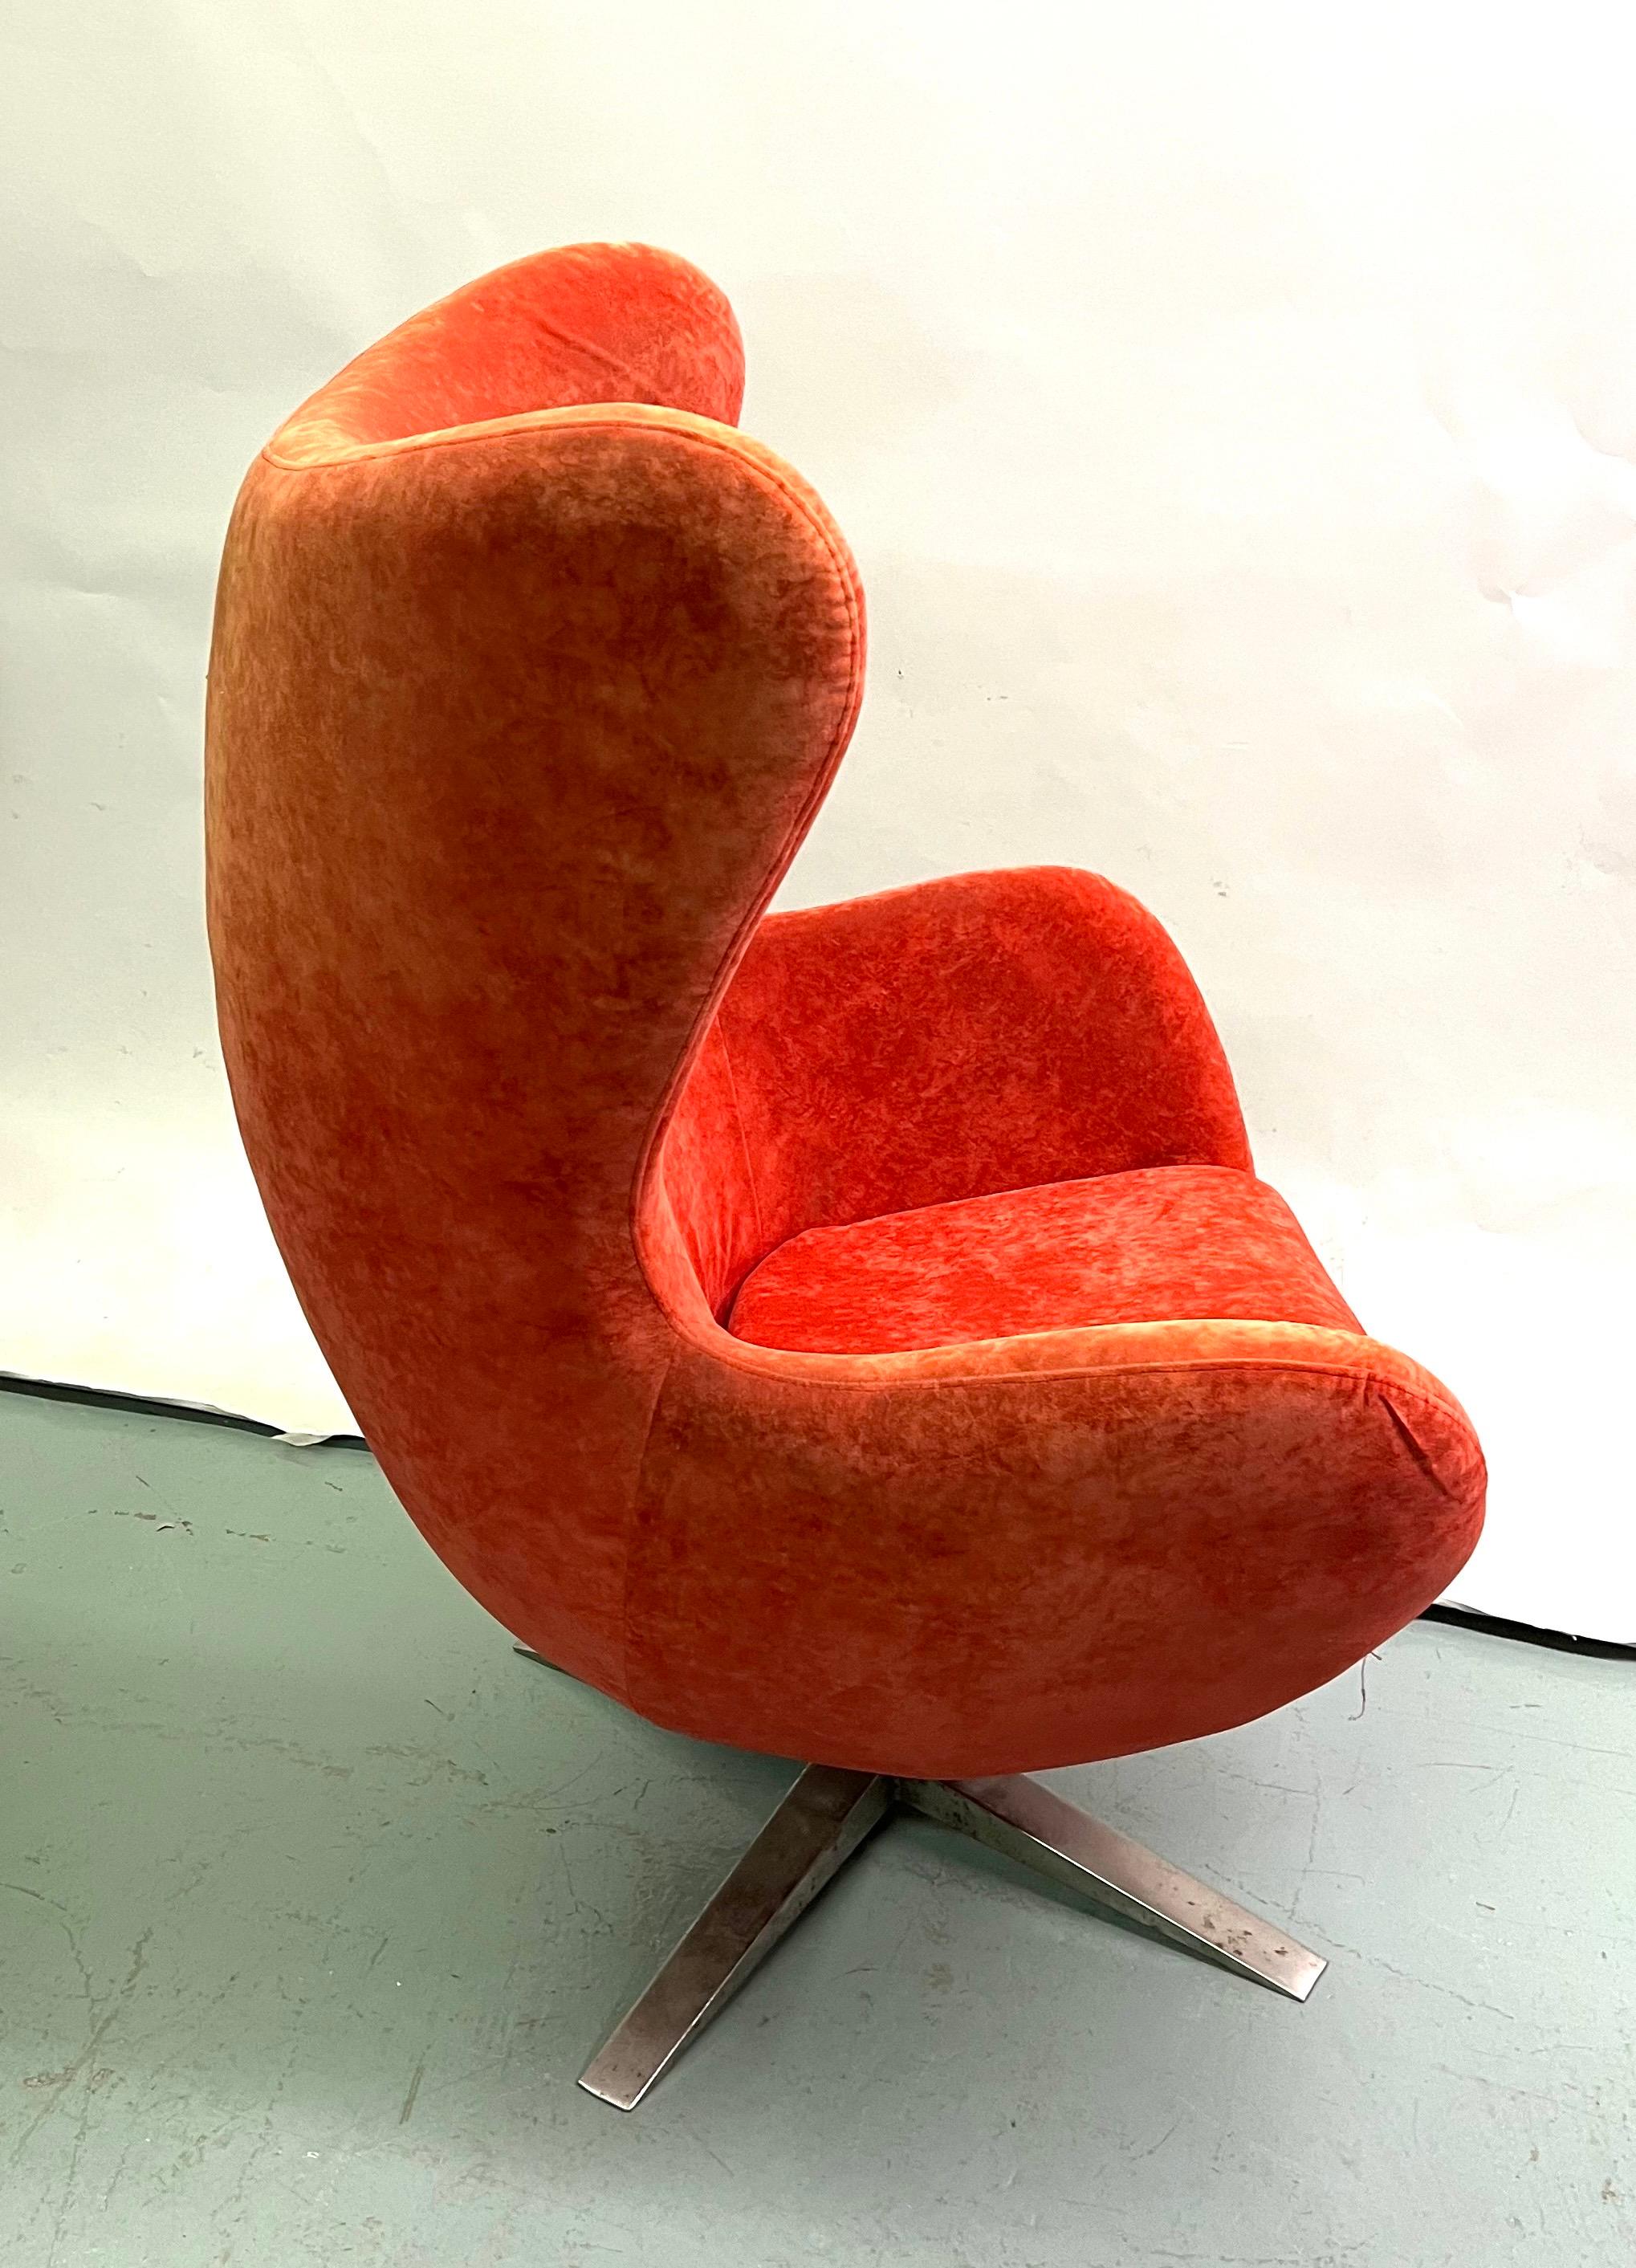 Seltenes Set von 3 dänischen Mid-Century Organic Modern Lounge / Club oder Sessel zugeschrieben Arne Jacobsen und Fritz Hansen. 2 der Stücke sind in der ursprünglichen 1960's Leder und das 3. Stück ist in gebürstetem rot orange Kord.  Die Stücke